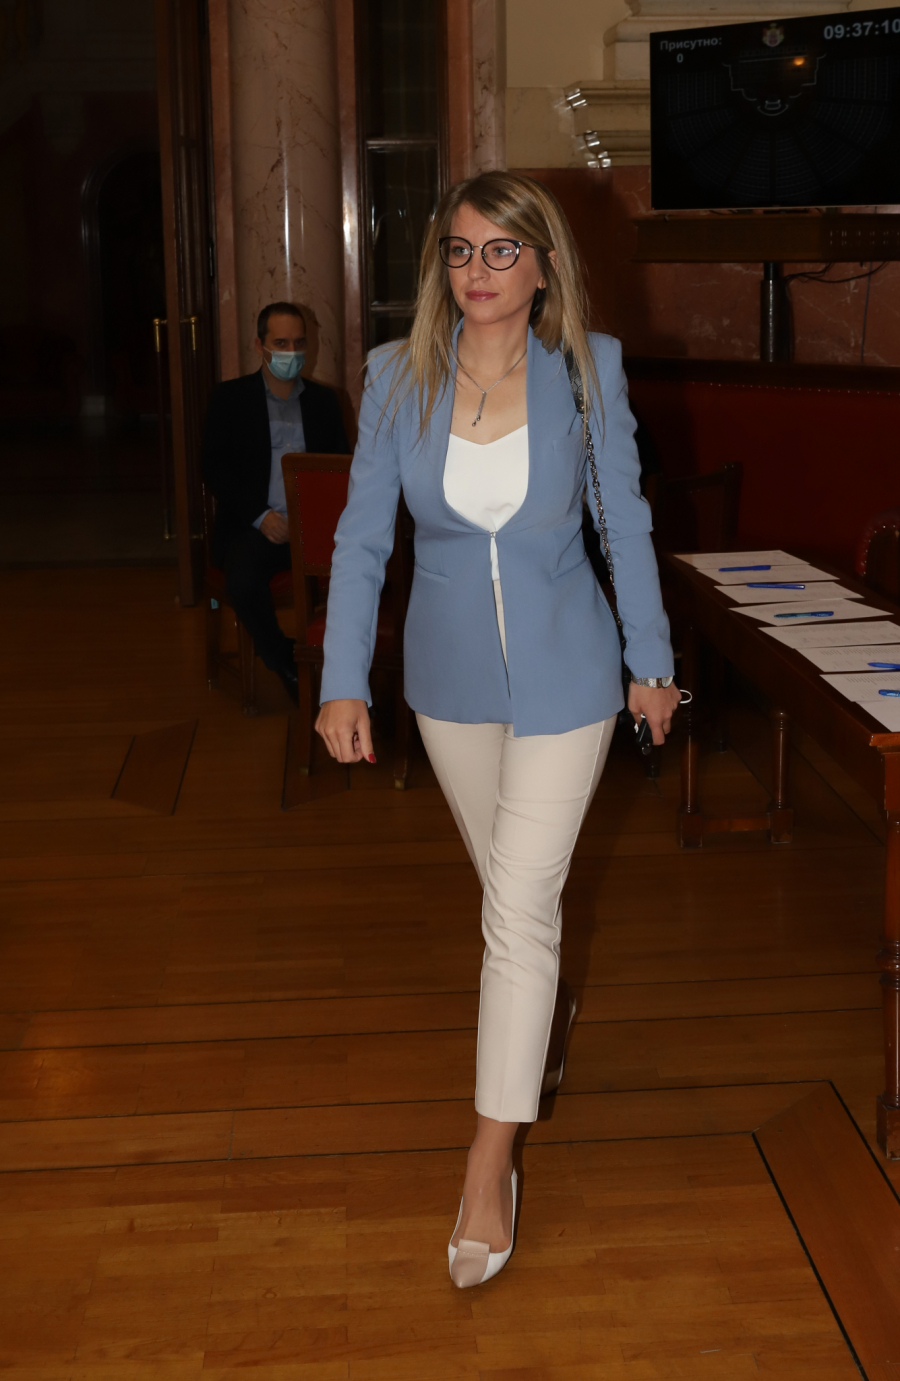 SKUPŠTINA KAO MODNA PISTA Evo kako su se obukle žene u srpskom parlamentu (FOTO)